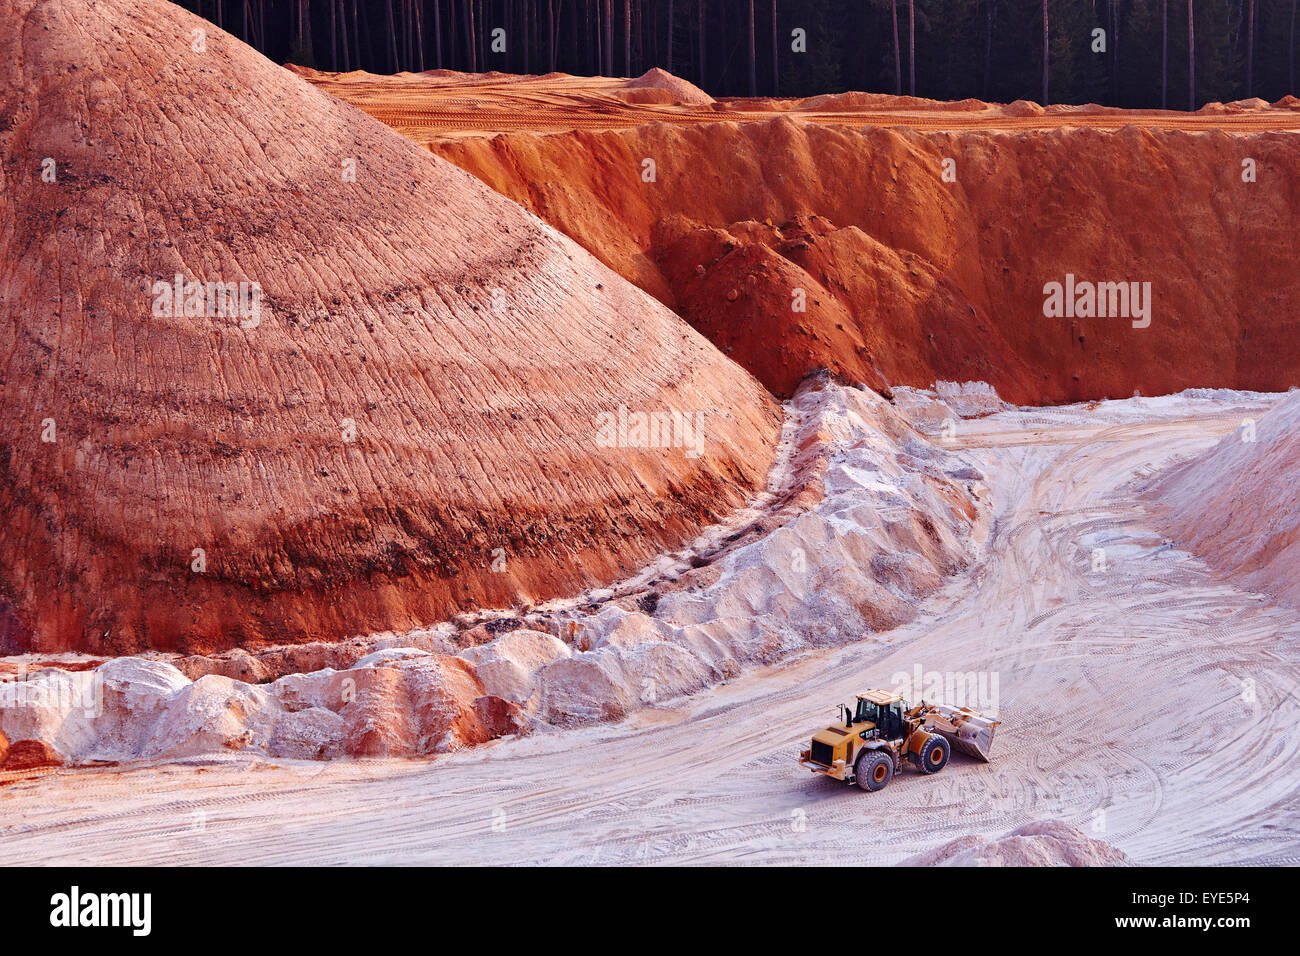 En pelle mine de kaolin, de l'exploitation minière du kaolin, Gebenbach, Bavière, Allemagne Banque D'Images